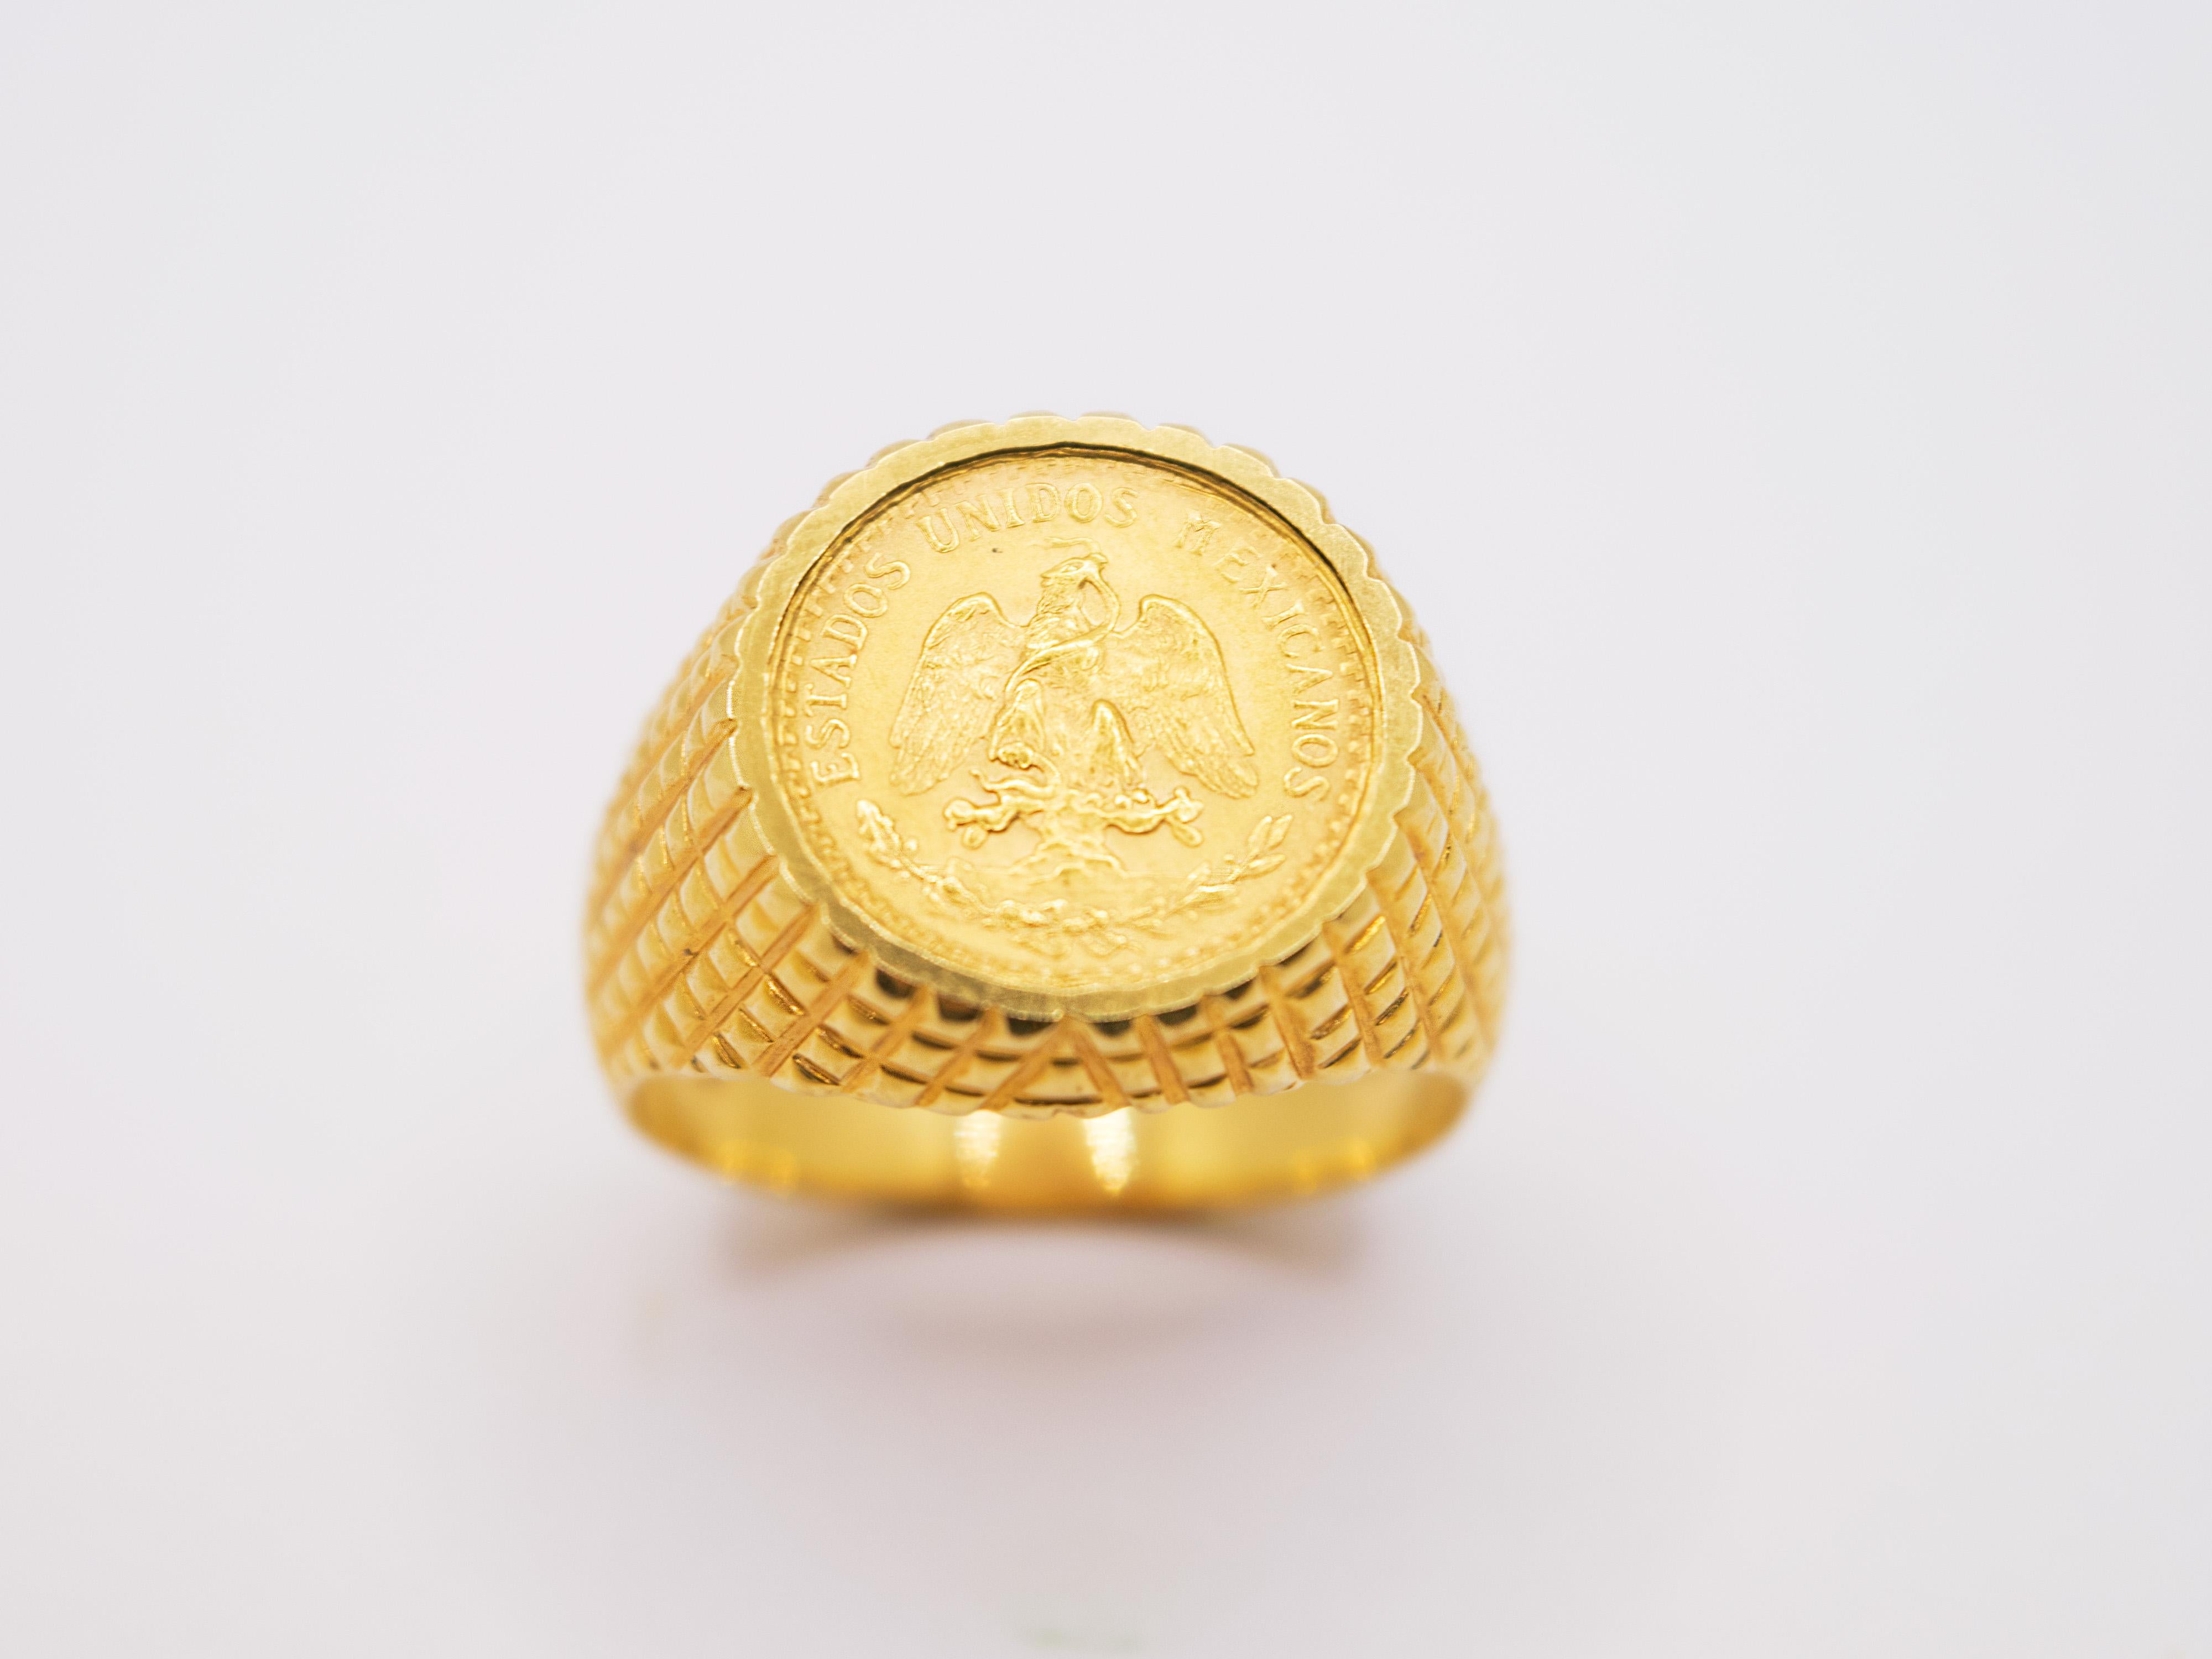 1945 dos pesos gold coin necklace